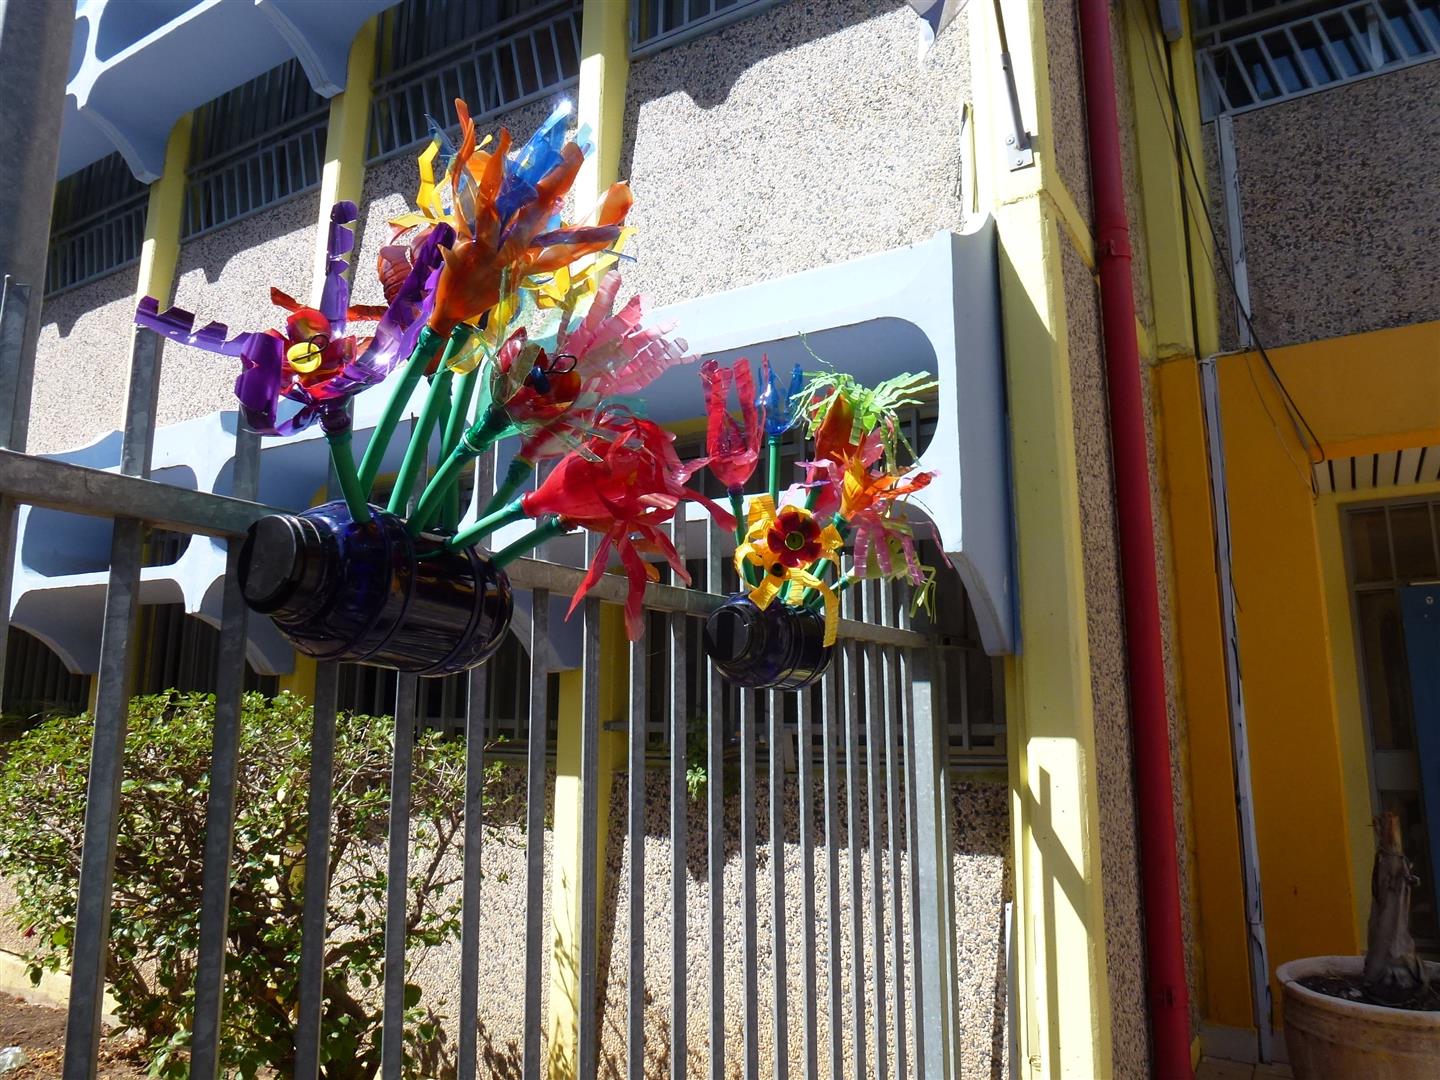 גדר הגן לאחר העיצוב  עם ילדי אמיר באדניות פרחוניות מבקבוקי פלסטיק